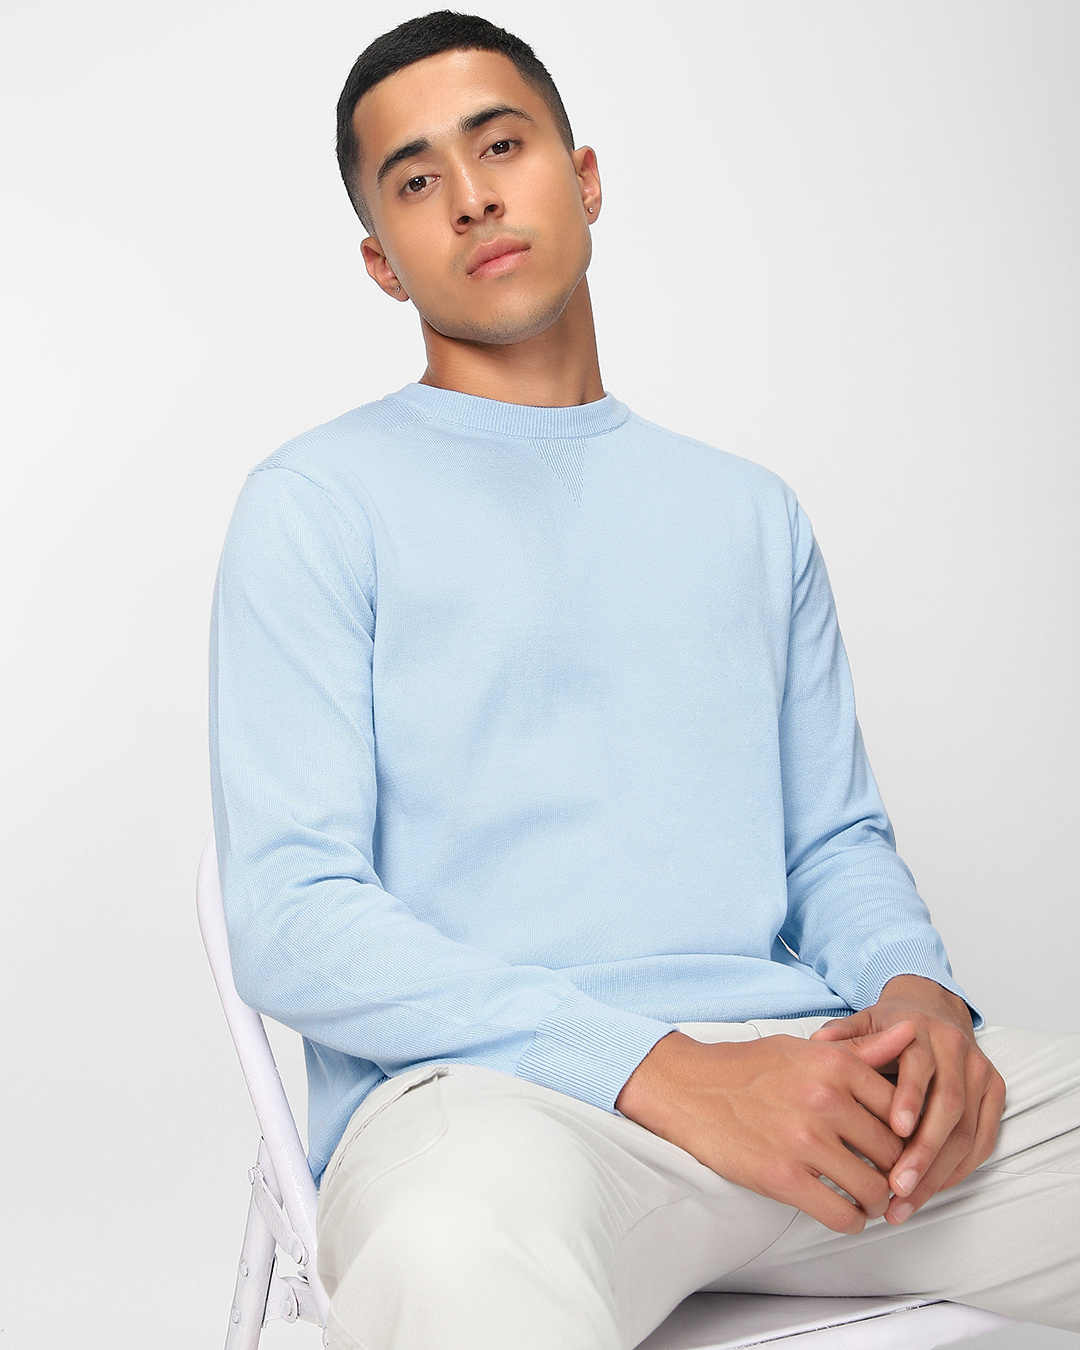 Buy Men's Blue Sweater Online at Bewakoof